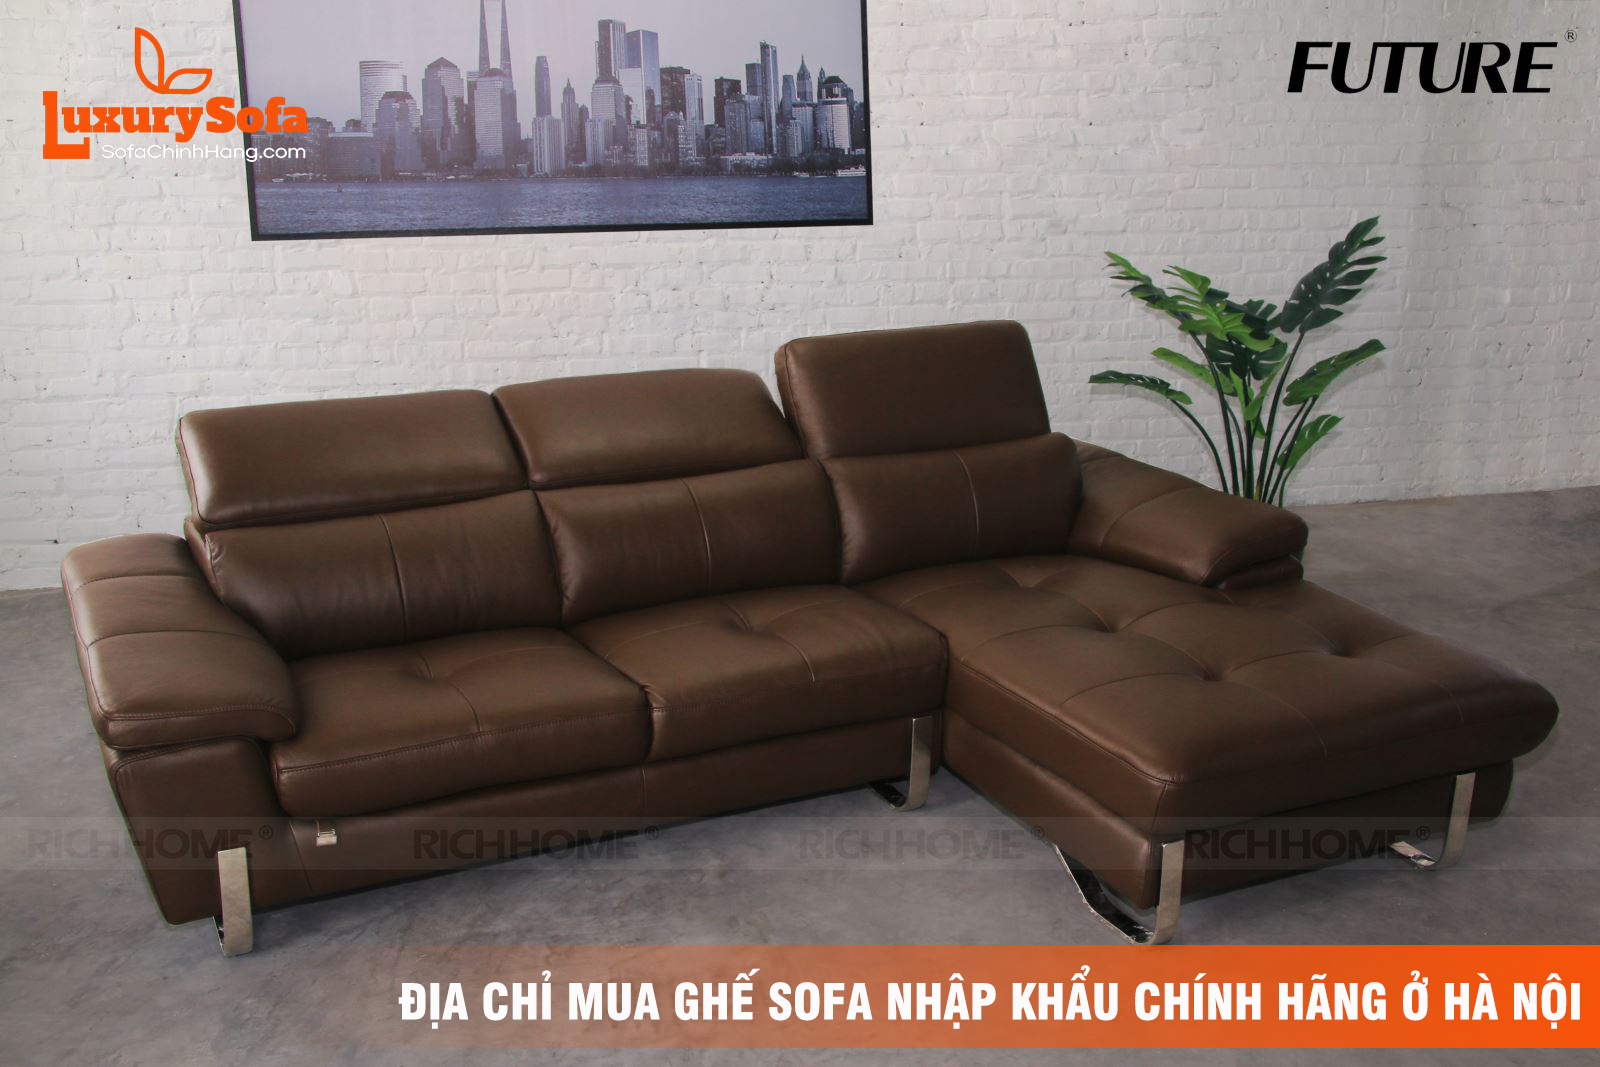 Các địa chỉ mua ghế sofa nhập khẩu chính hãng ở Hà Nội